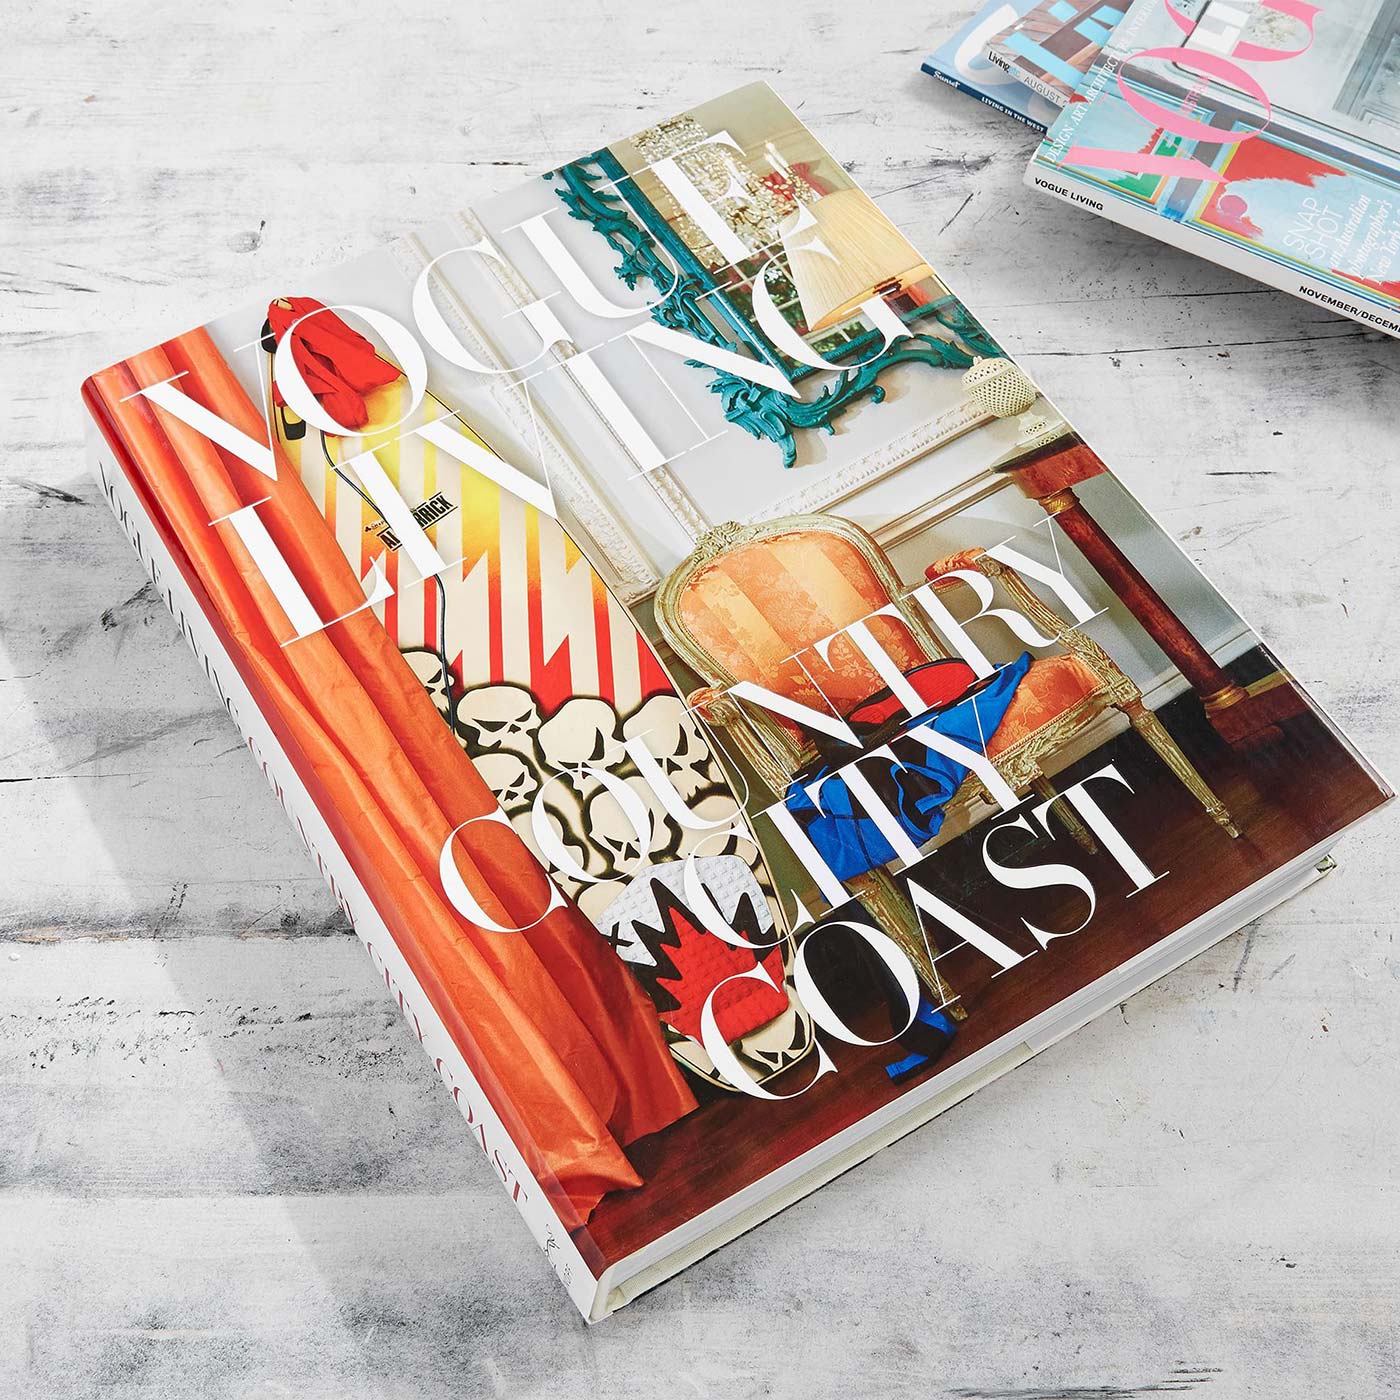 Vogue Living Country City Coast' Interior Design Hardcover Book